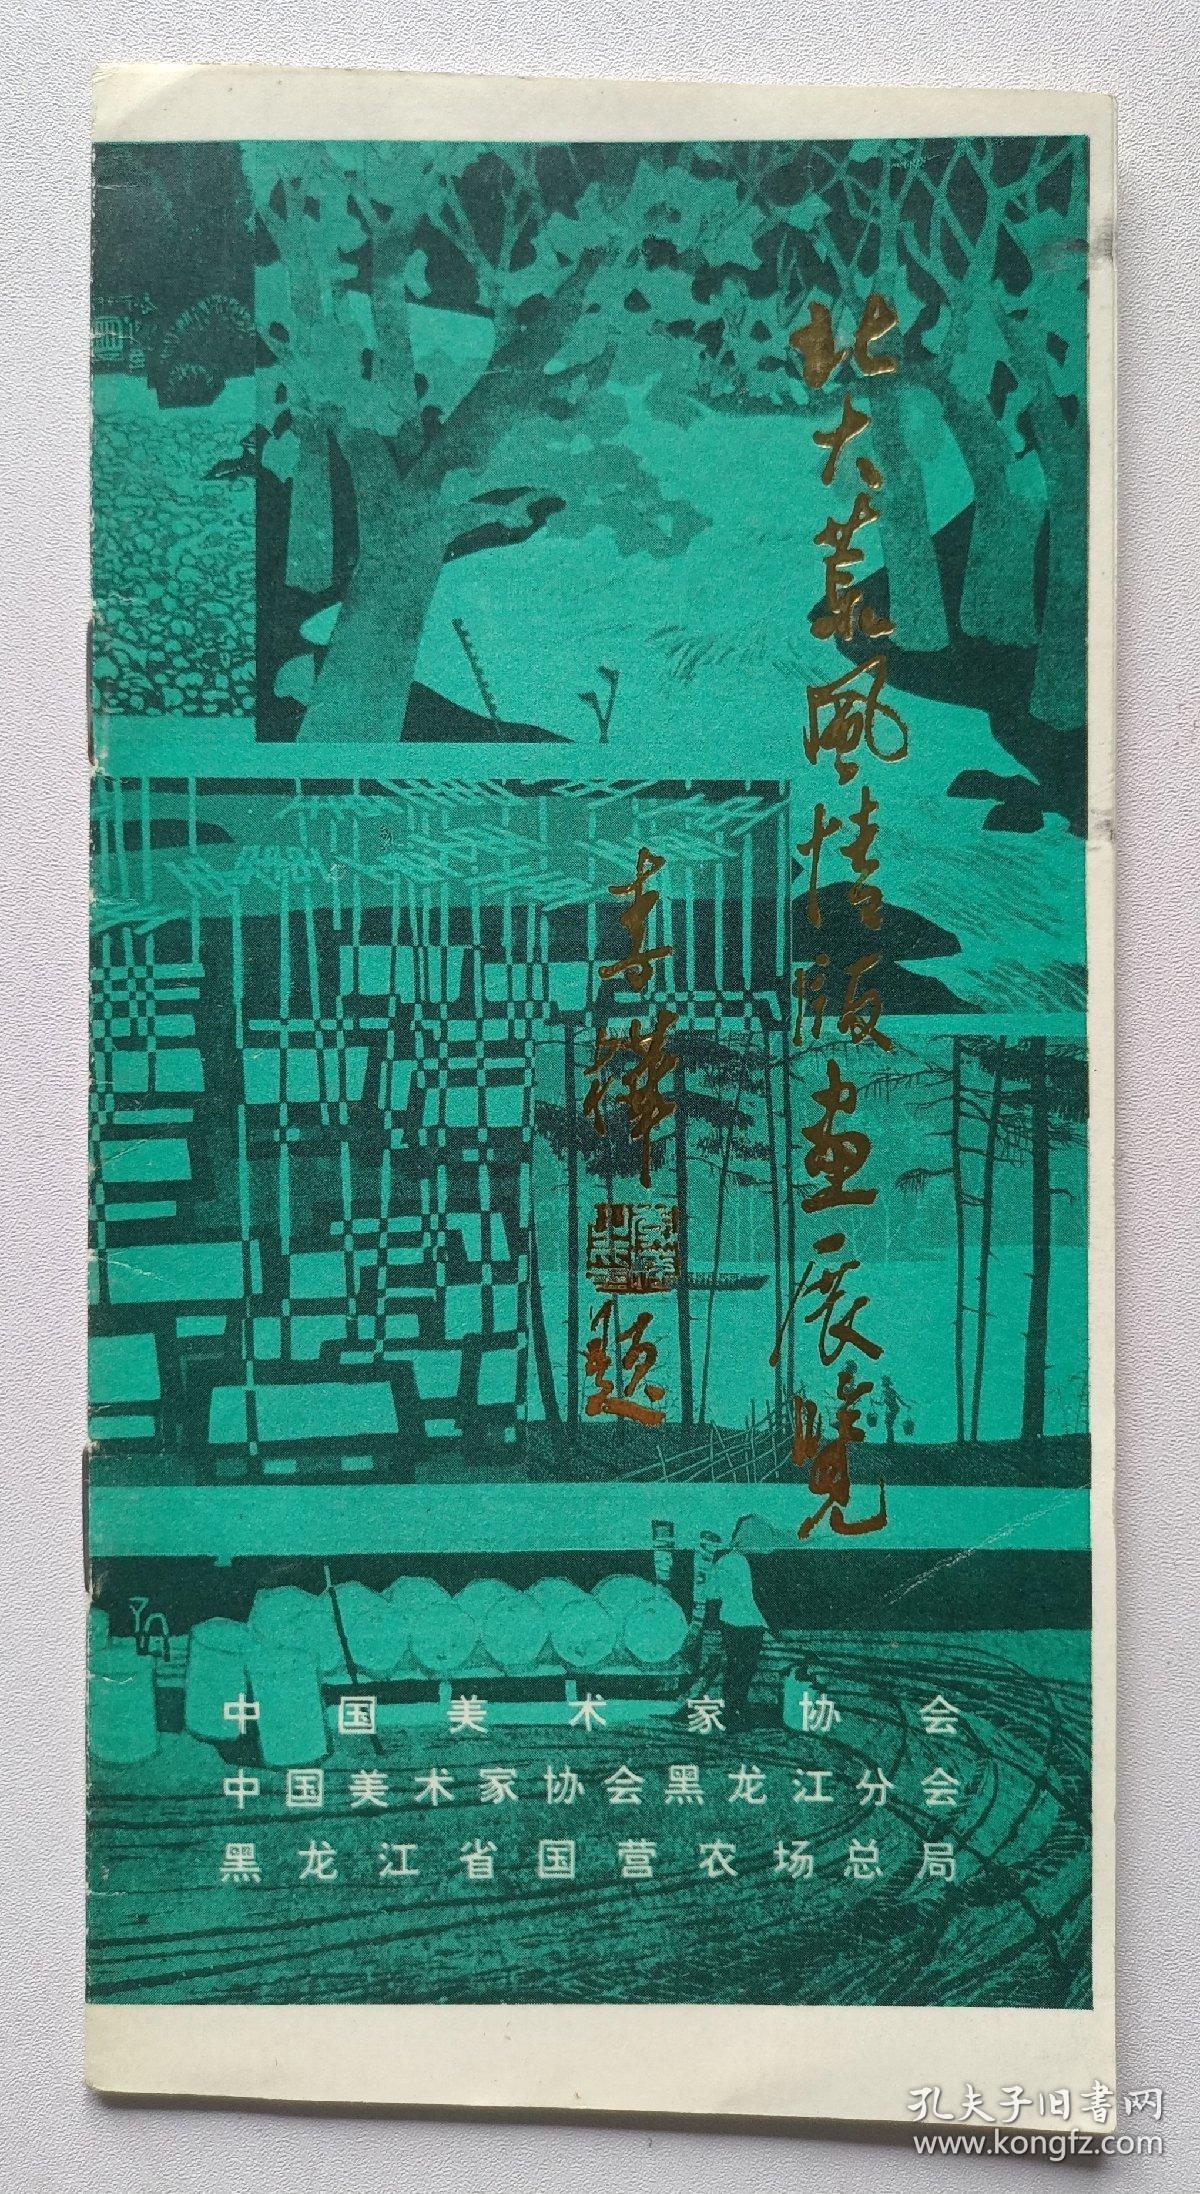 1982年中国美术家协会黑龙江分会印制《北大荒风情版画展览》1份17页插图本